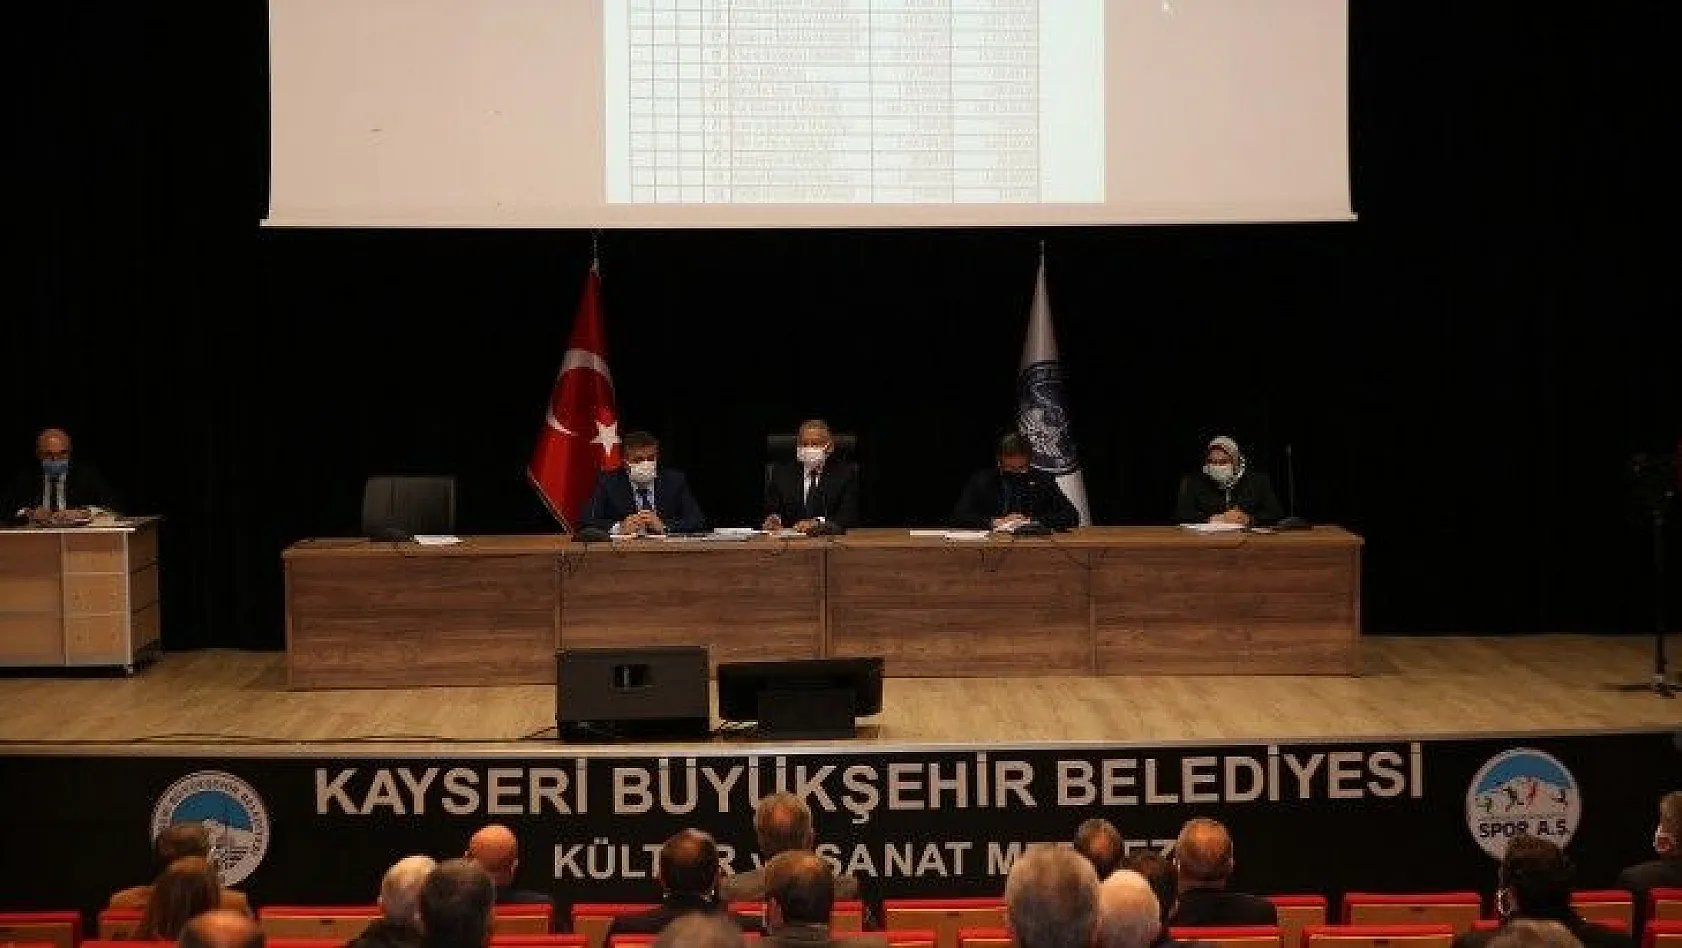 Kayseri Büyükşehir Belediyesi bir yılda ne kadar faiz ödedi?